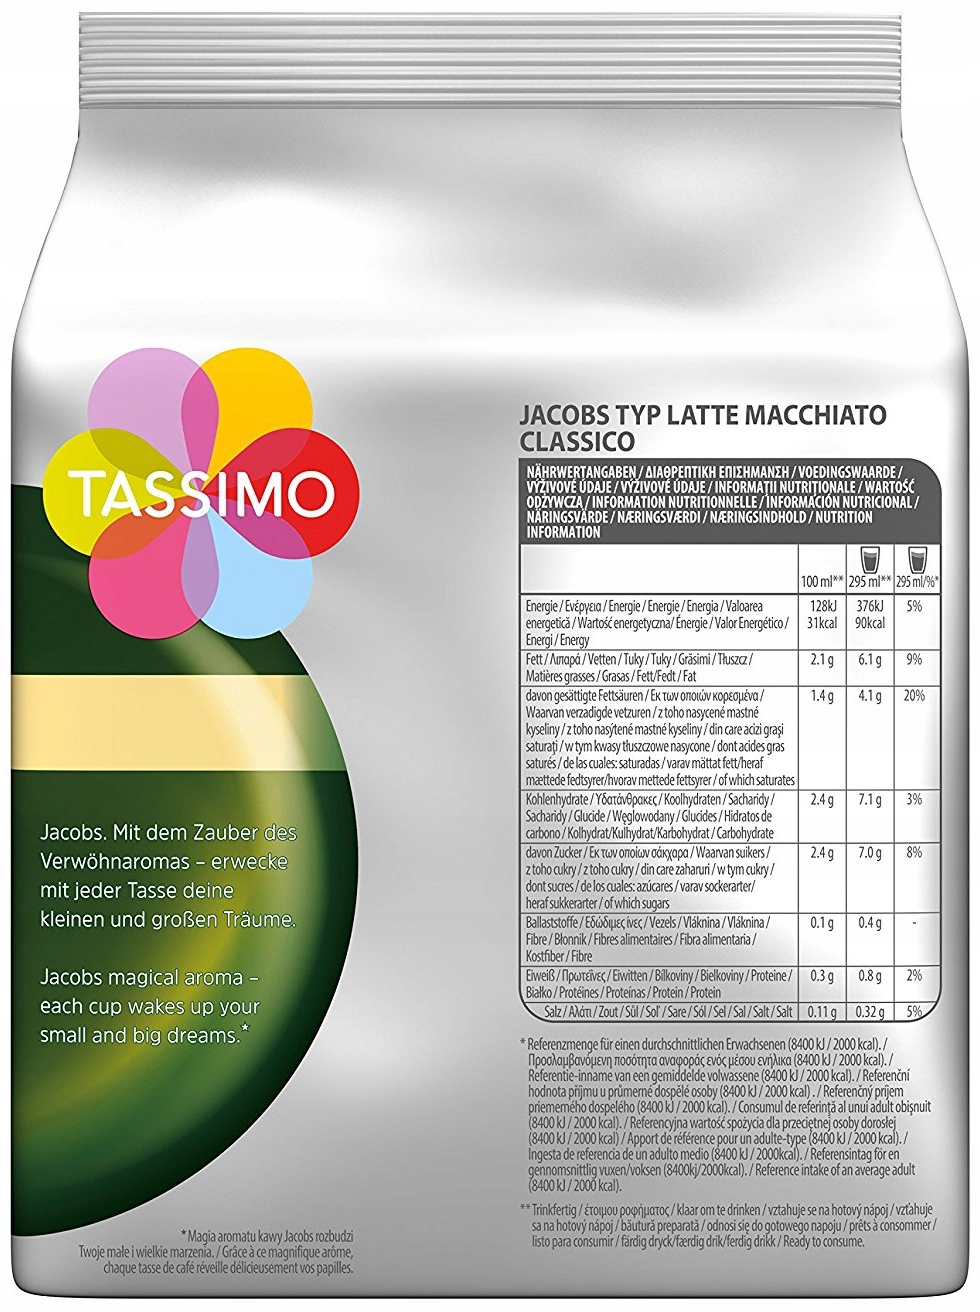 Капсулы Tassimo Jacobs Latte Macchiato Classico 8 Количество штук в упаковке 16 шт.